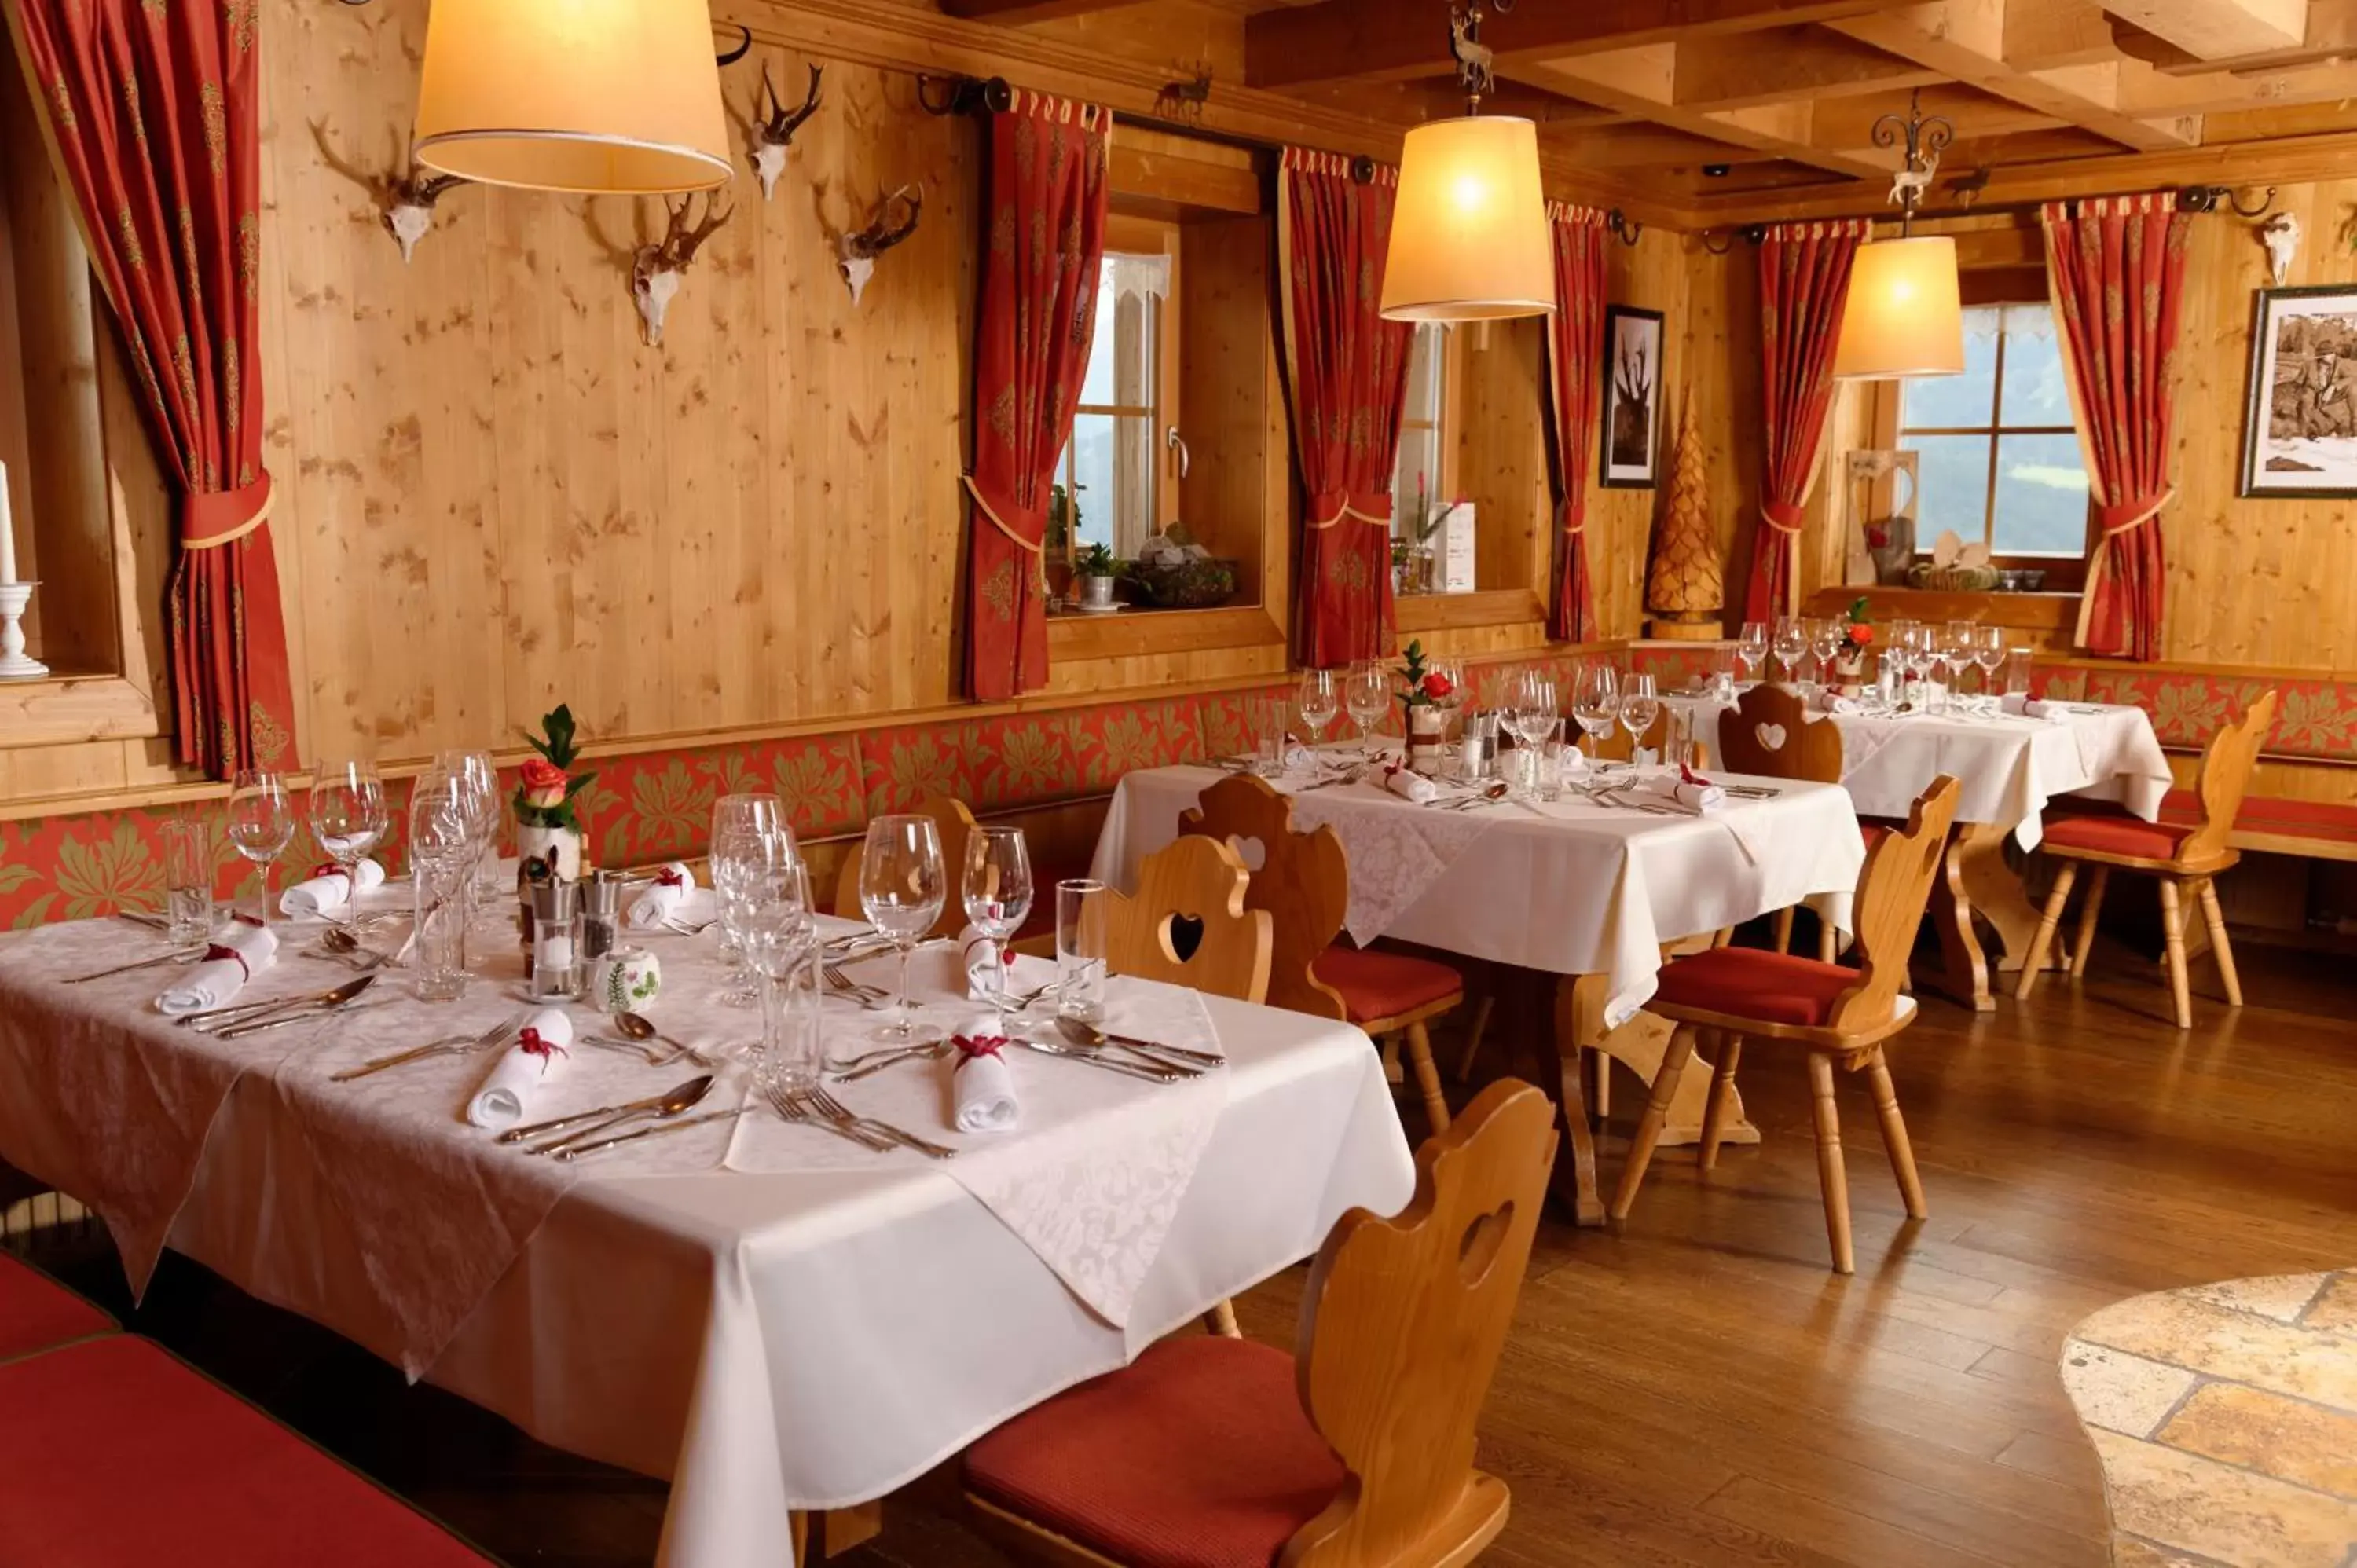 Seating area, Restaurant/Places to Eat in Almwelt Austria